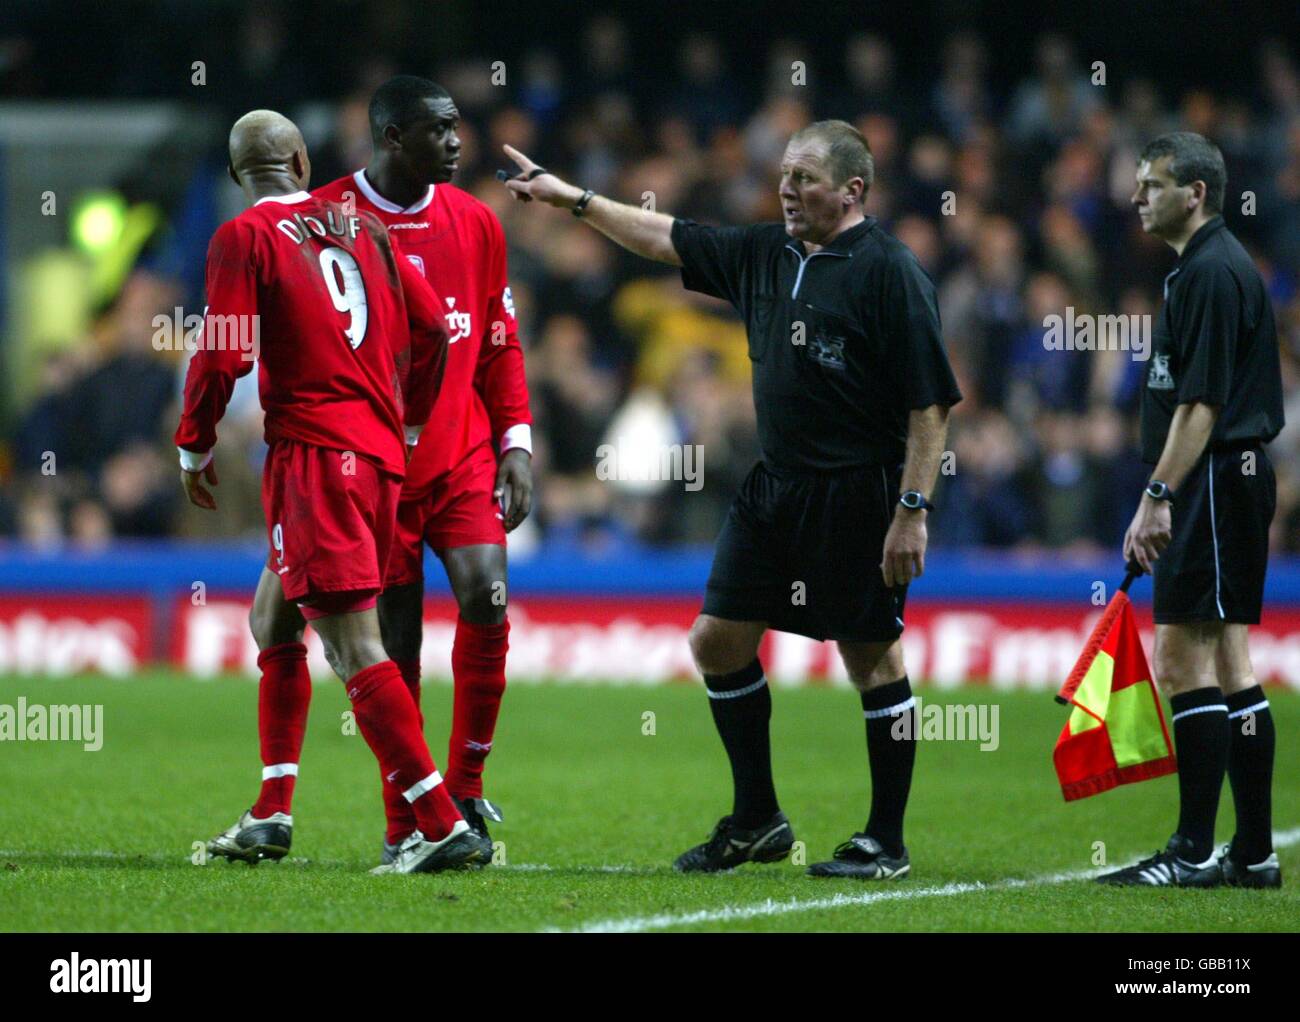 Calcio - fa Barclaycard Premiership - Chelsea v Liverpool. L'arbitro Steve Dunn dice a El Hadji Diouf di Liverpool (l) di lasciare il campo dopo avergli mostrato la carta rossa Foto Stock